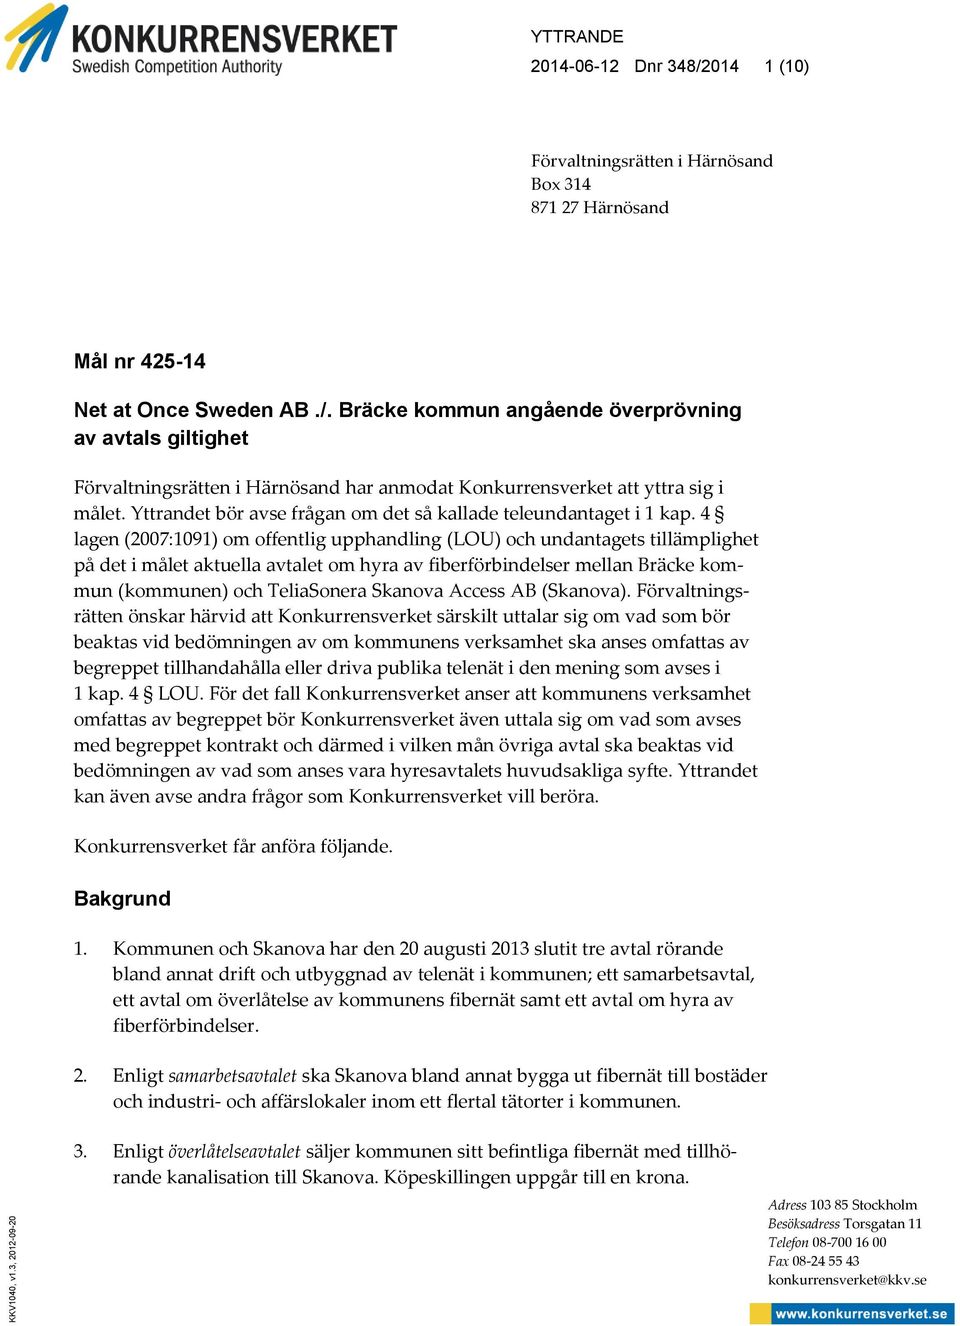 4 lagen (2007:1091) om offentlig upphandling (LOU) och undantagets tillämplighet på det i målet aktuella avtalet om hyra av fiberförbindelser mellan Bräcke kommun (kommunen) och TeliaSonera Skanova